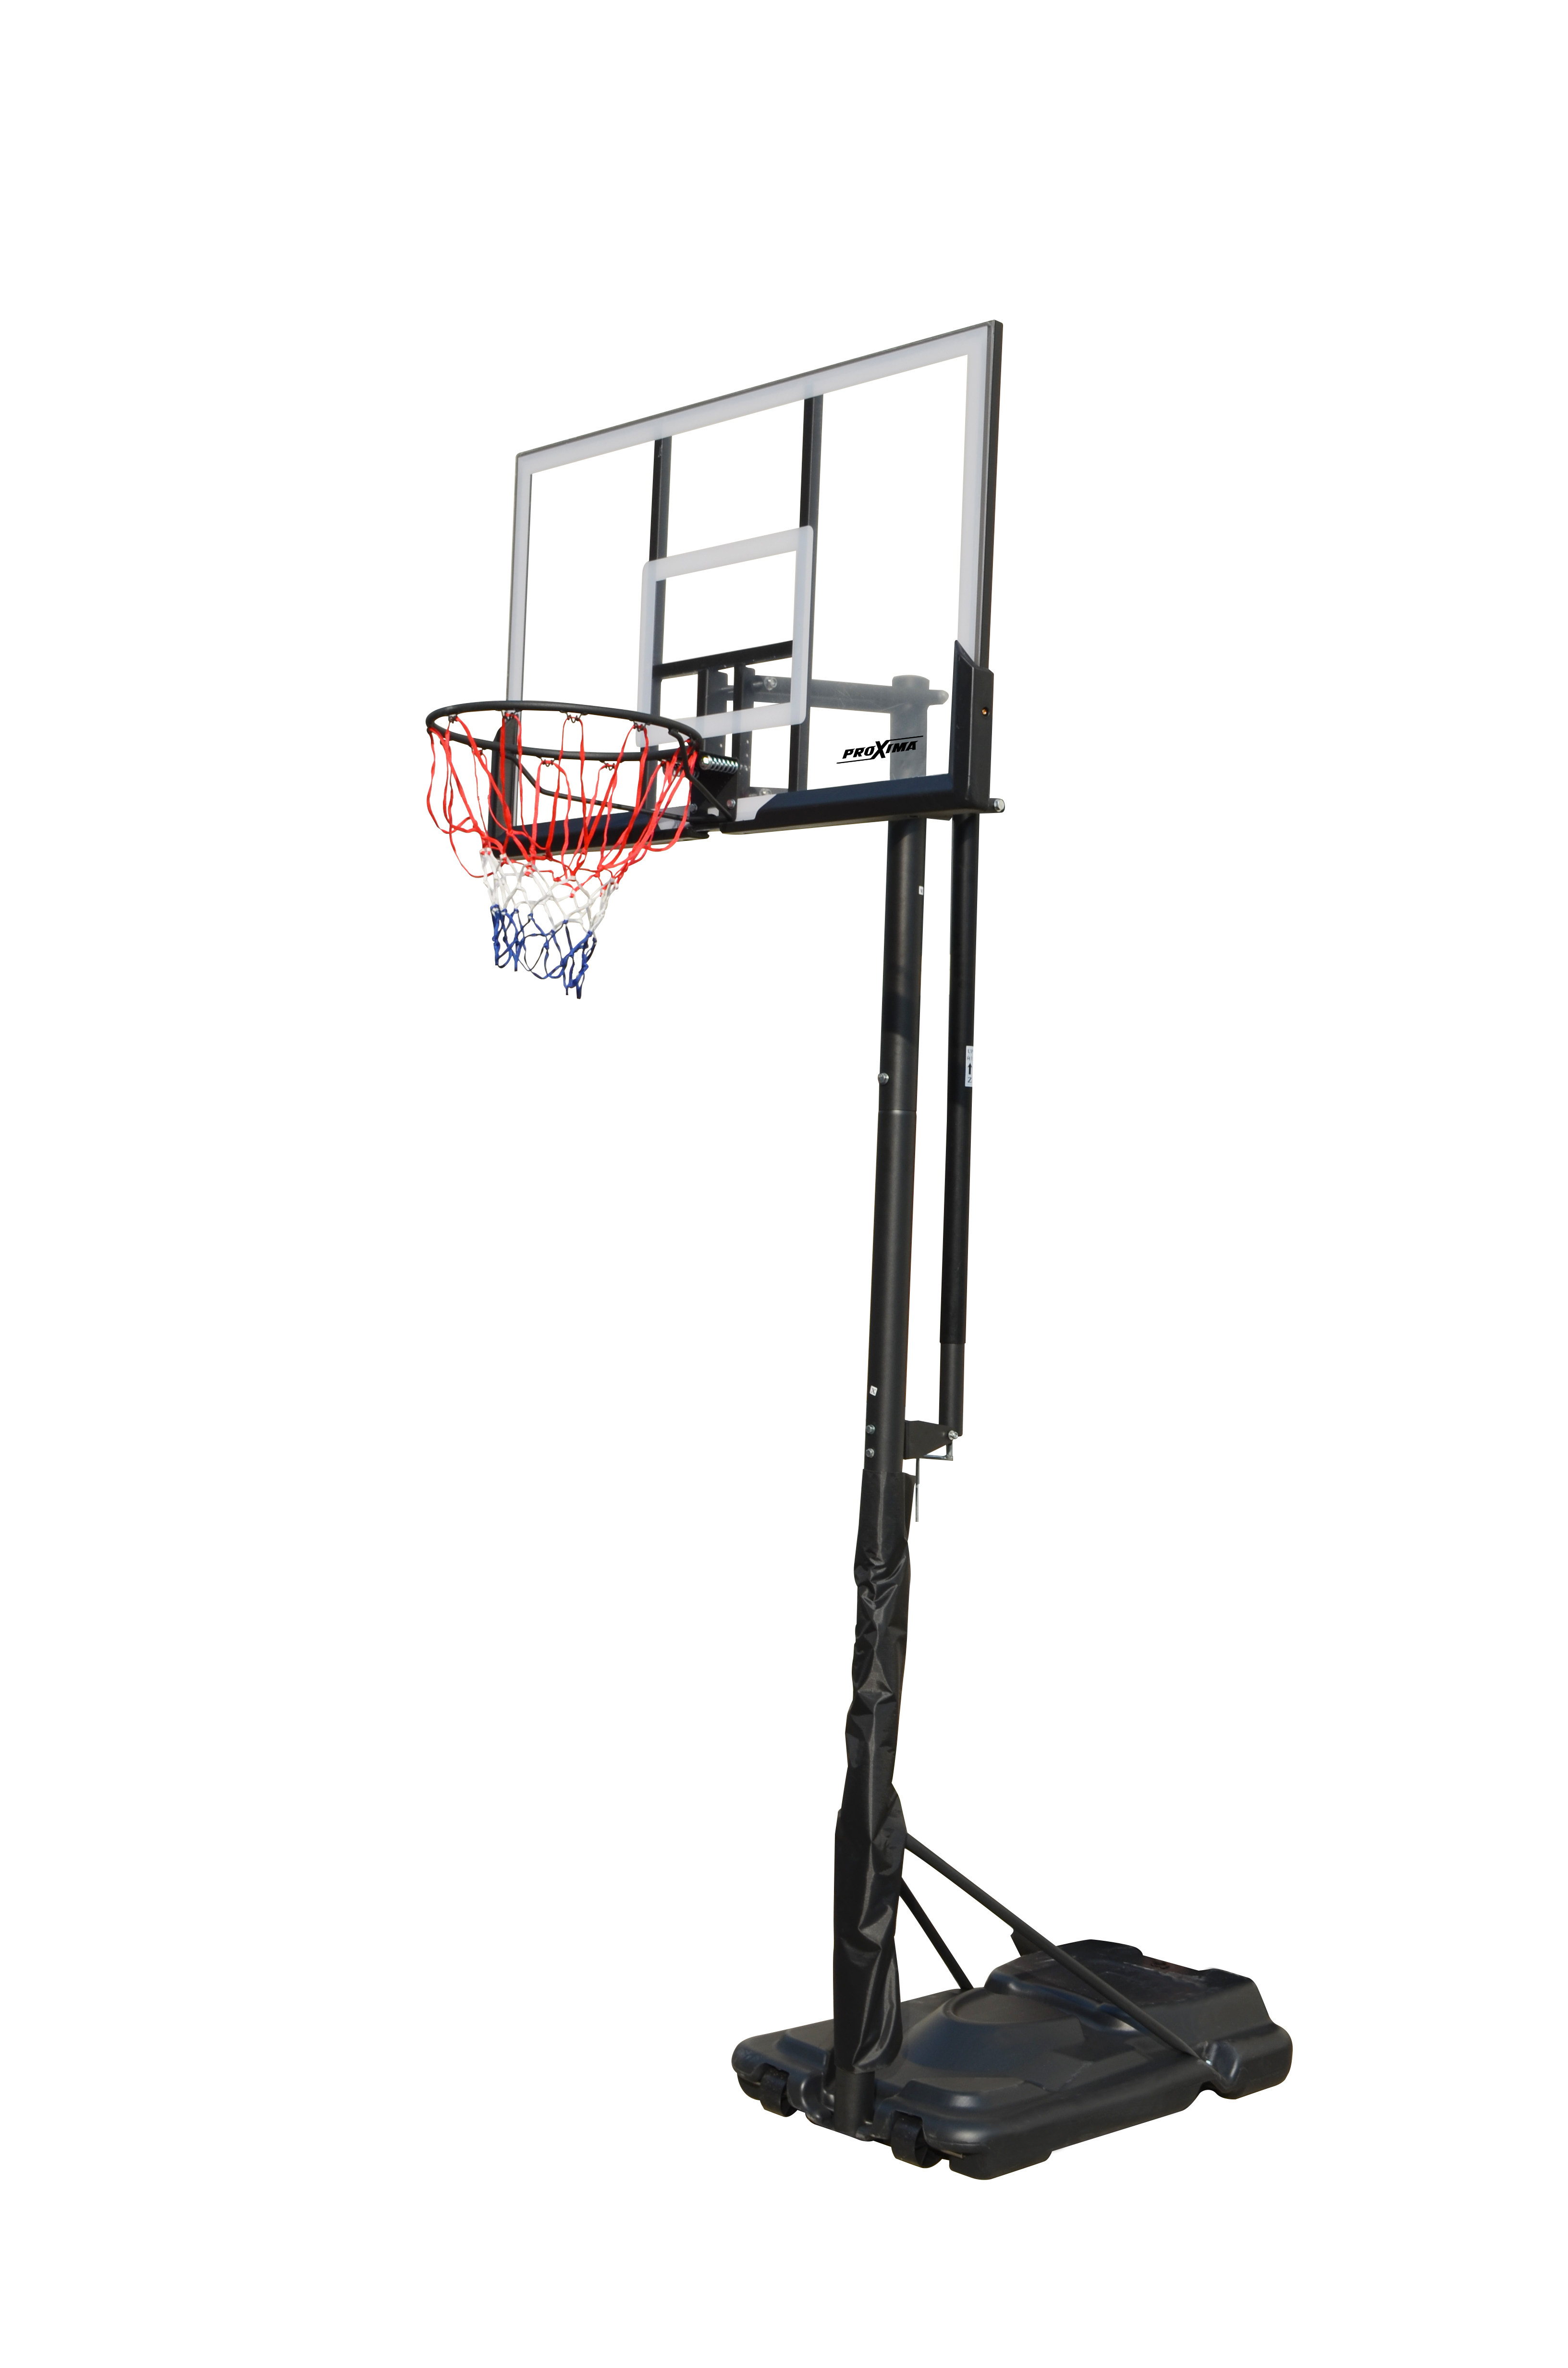 Мобильная баскетбольная стойка Proxima 50", поликарбонат. Фото N2